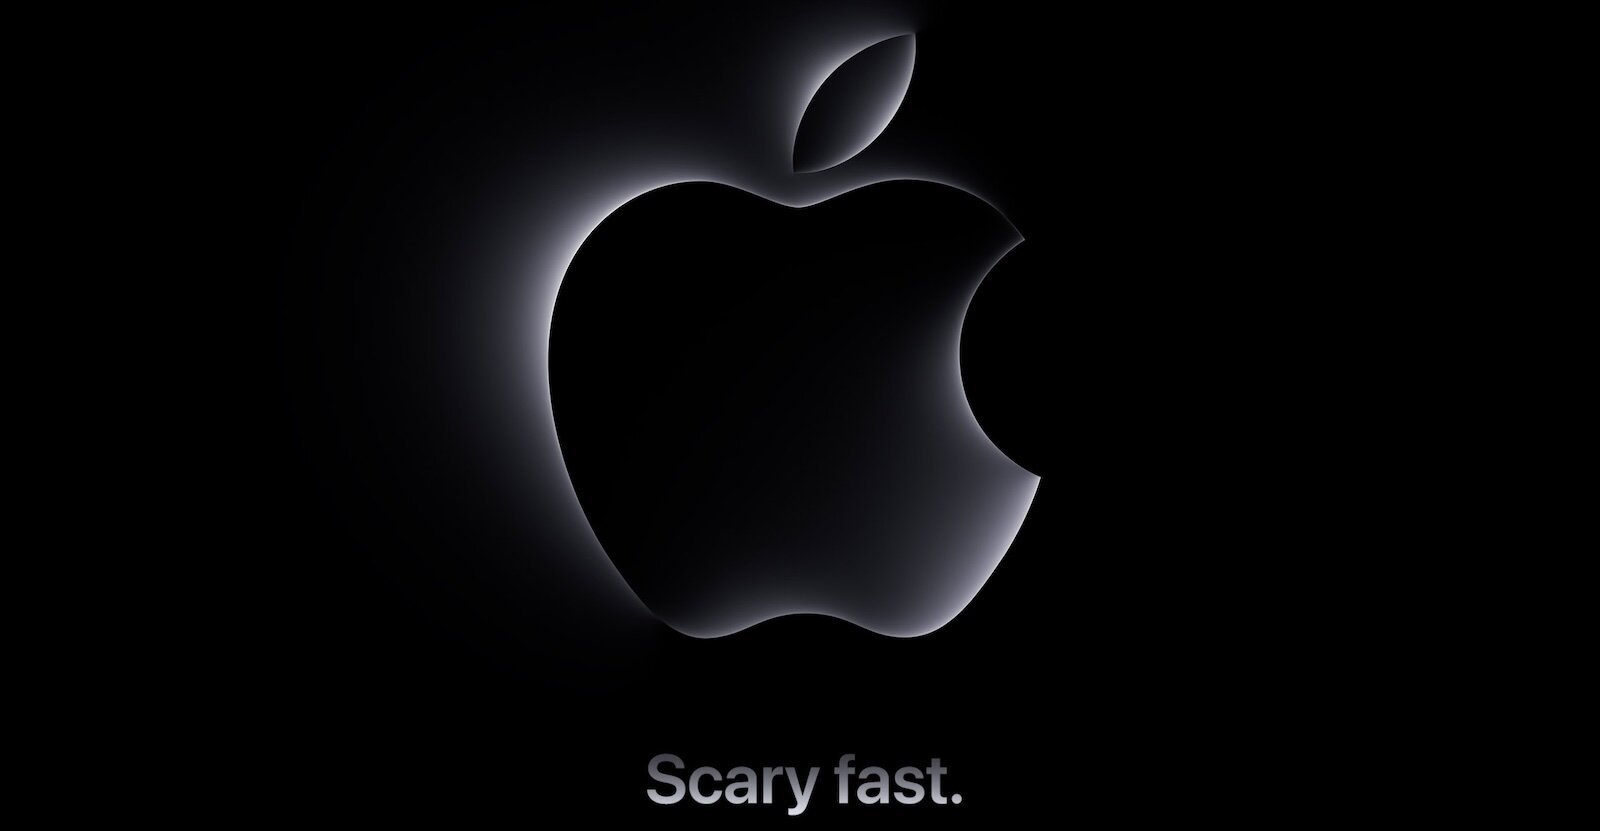 Στις 31 Οκτωβρίου η παρουσίαση νέων iMac και MacBook από την Apple